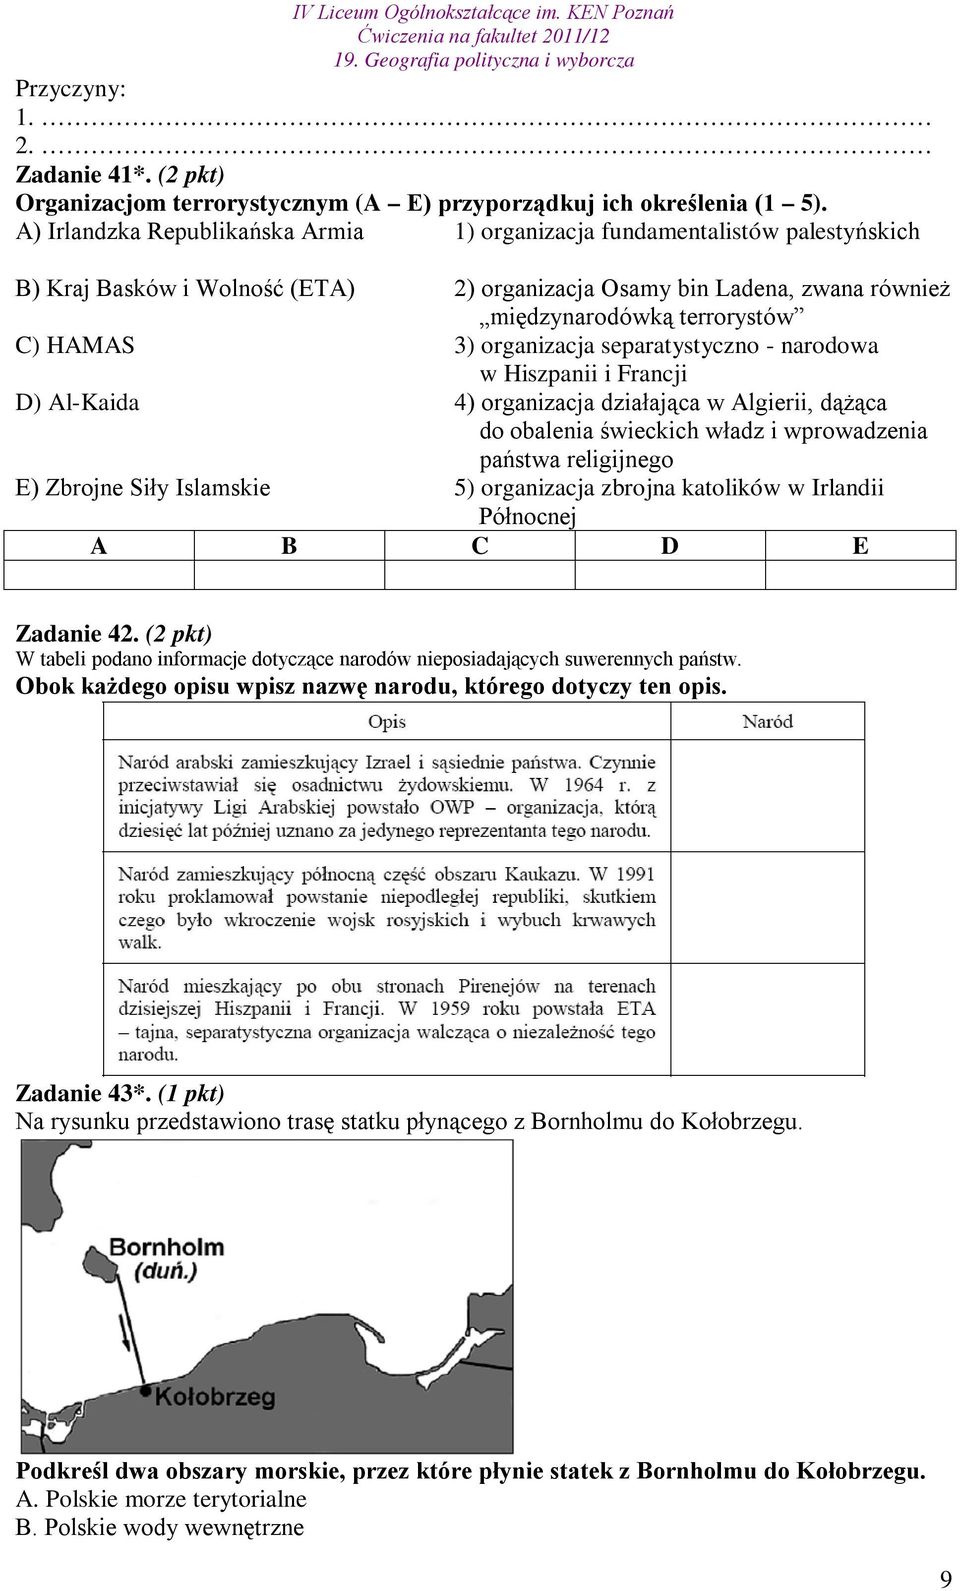 organizacja separatystyczno - narodowa w Hiszpanii i Francji D) Al-Kaida 4) organizacja działająca w Algierii, dążąca do obalenia świeckich władz i wprowadzenia państwa religijnego E) Zbrojne Siły